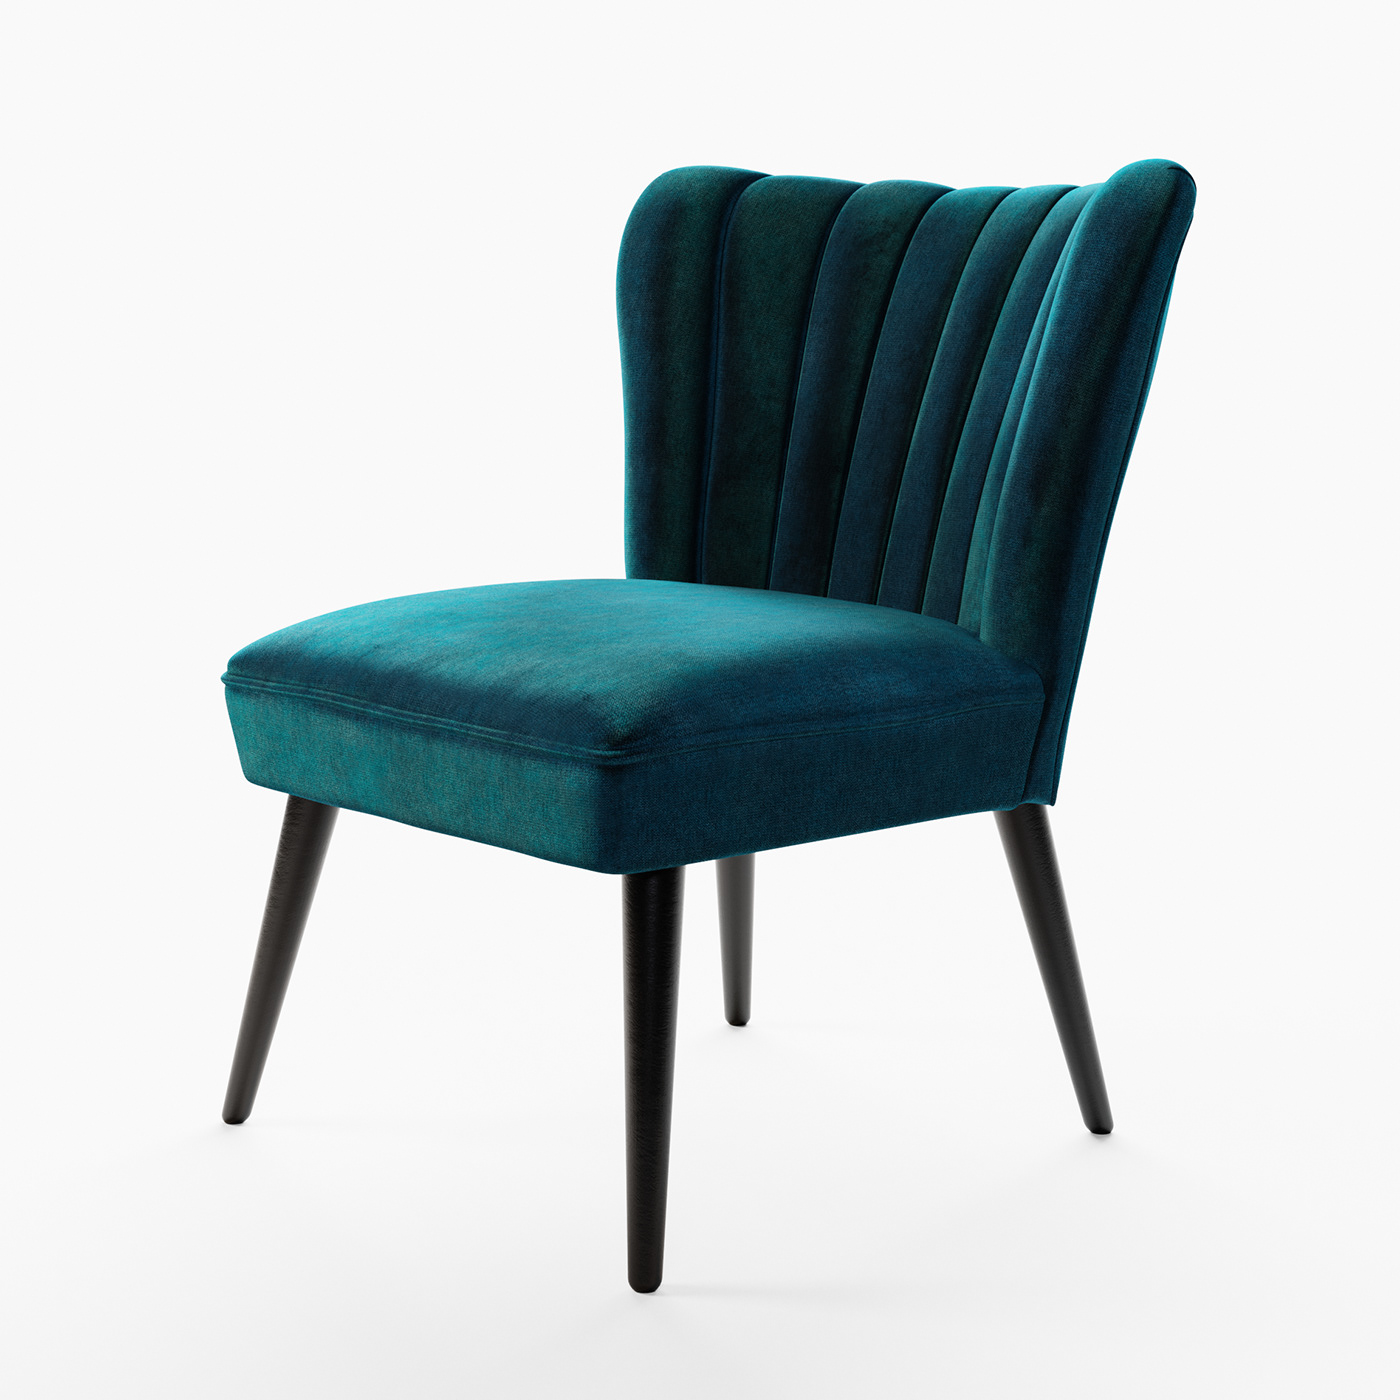 armchair armchair design blender cycles blender3d design furniture Packshot 3d  furniture modeling furniture packshots